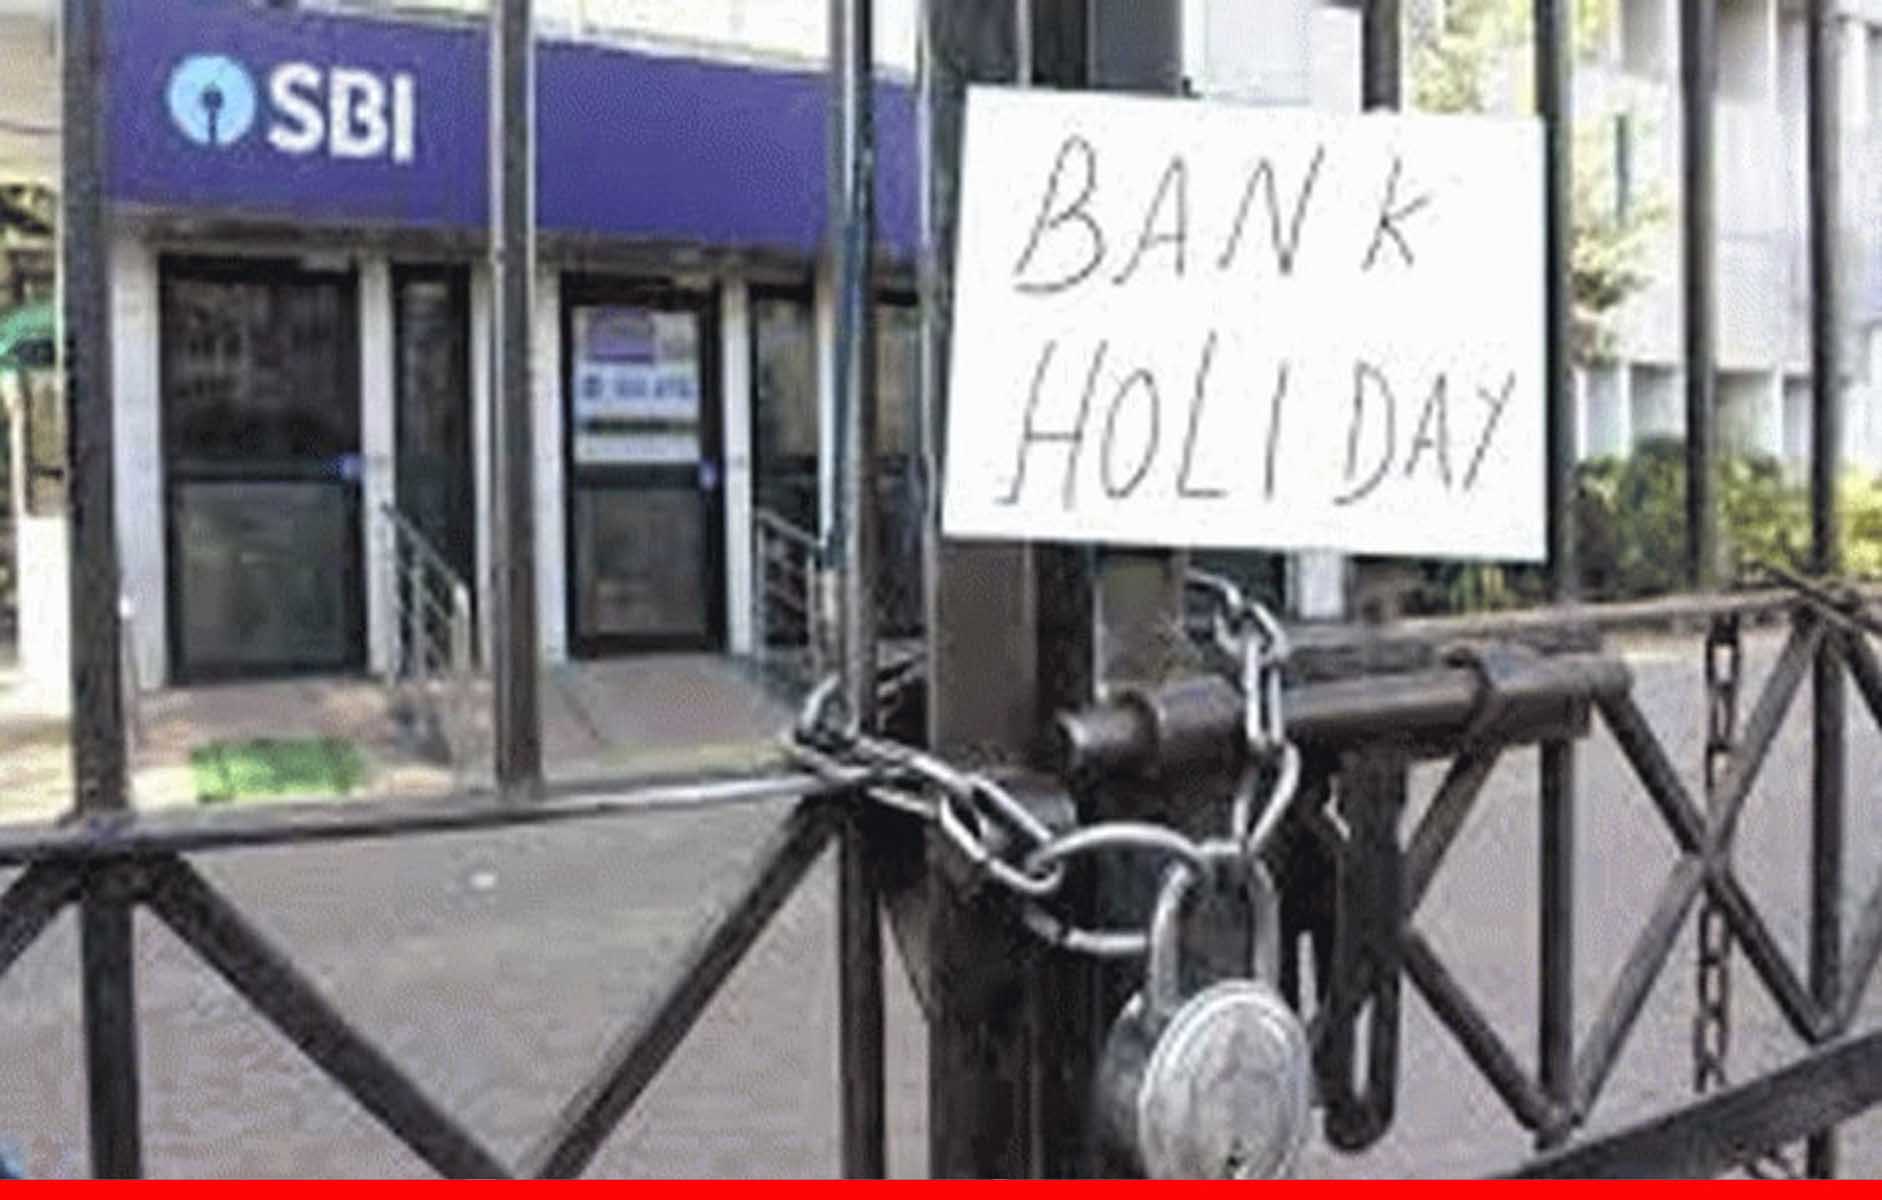 बैंक से संबंधित काम आज ही निपटा लें, कल से लगातार 11 दिन बंद रहेंगे बैंक